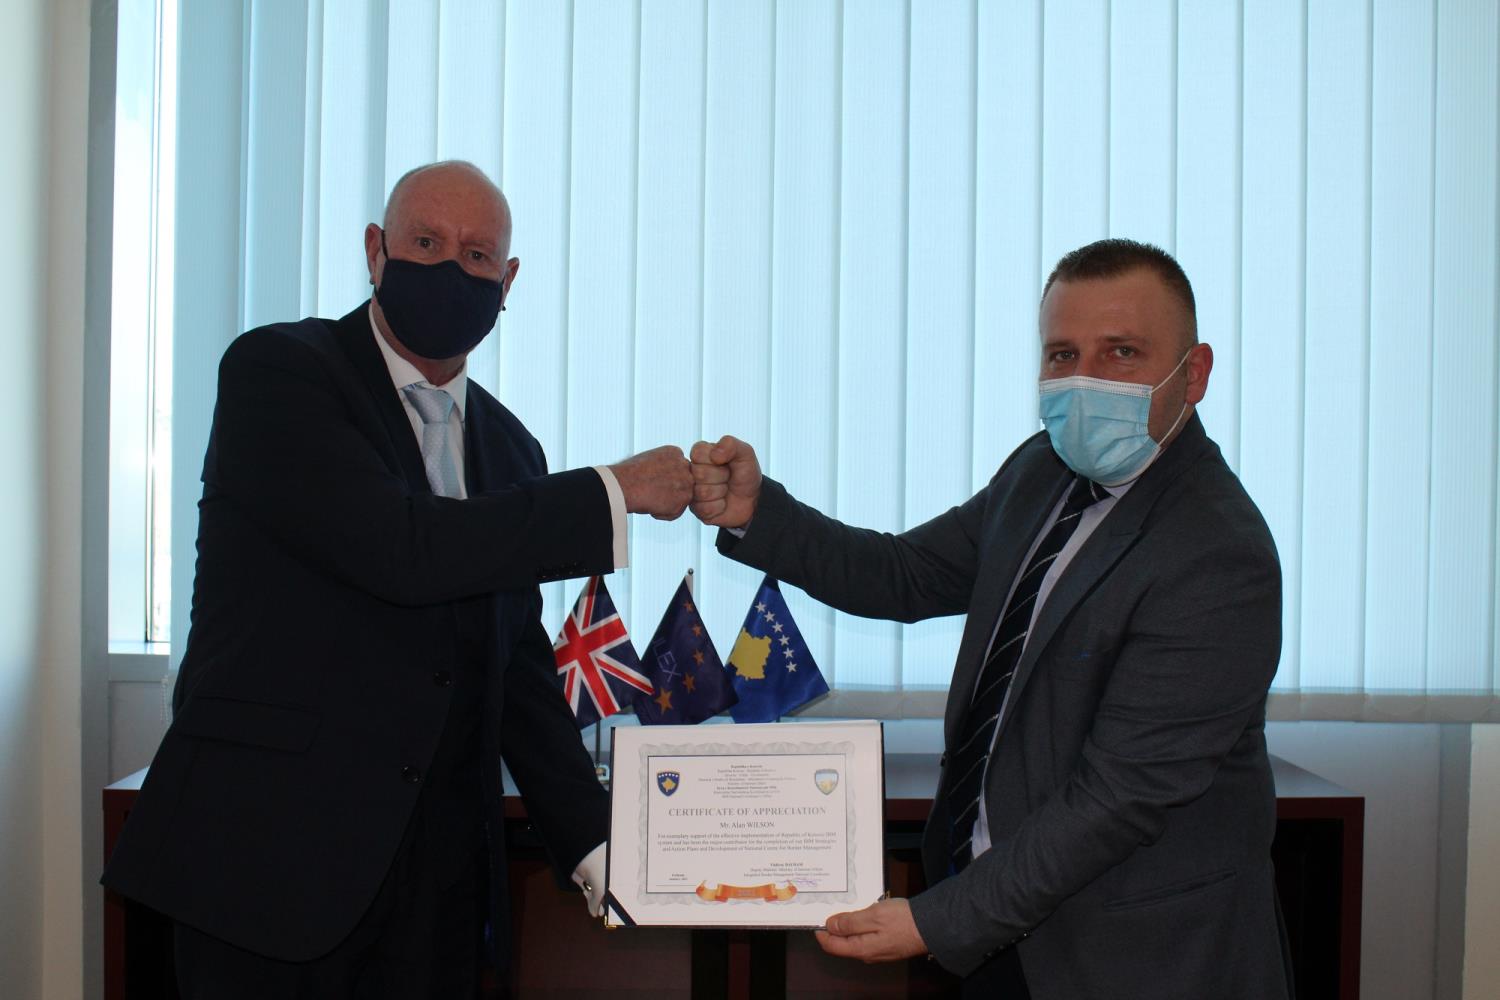  Mirënjohje nga partnerët – Alan Wilsoni i EULEX-it vlerësohet për kontributin e shkëlqyeshëm të tij për Ministrinë e Punëve të Brendshme dhe Doganën e Kosovës